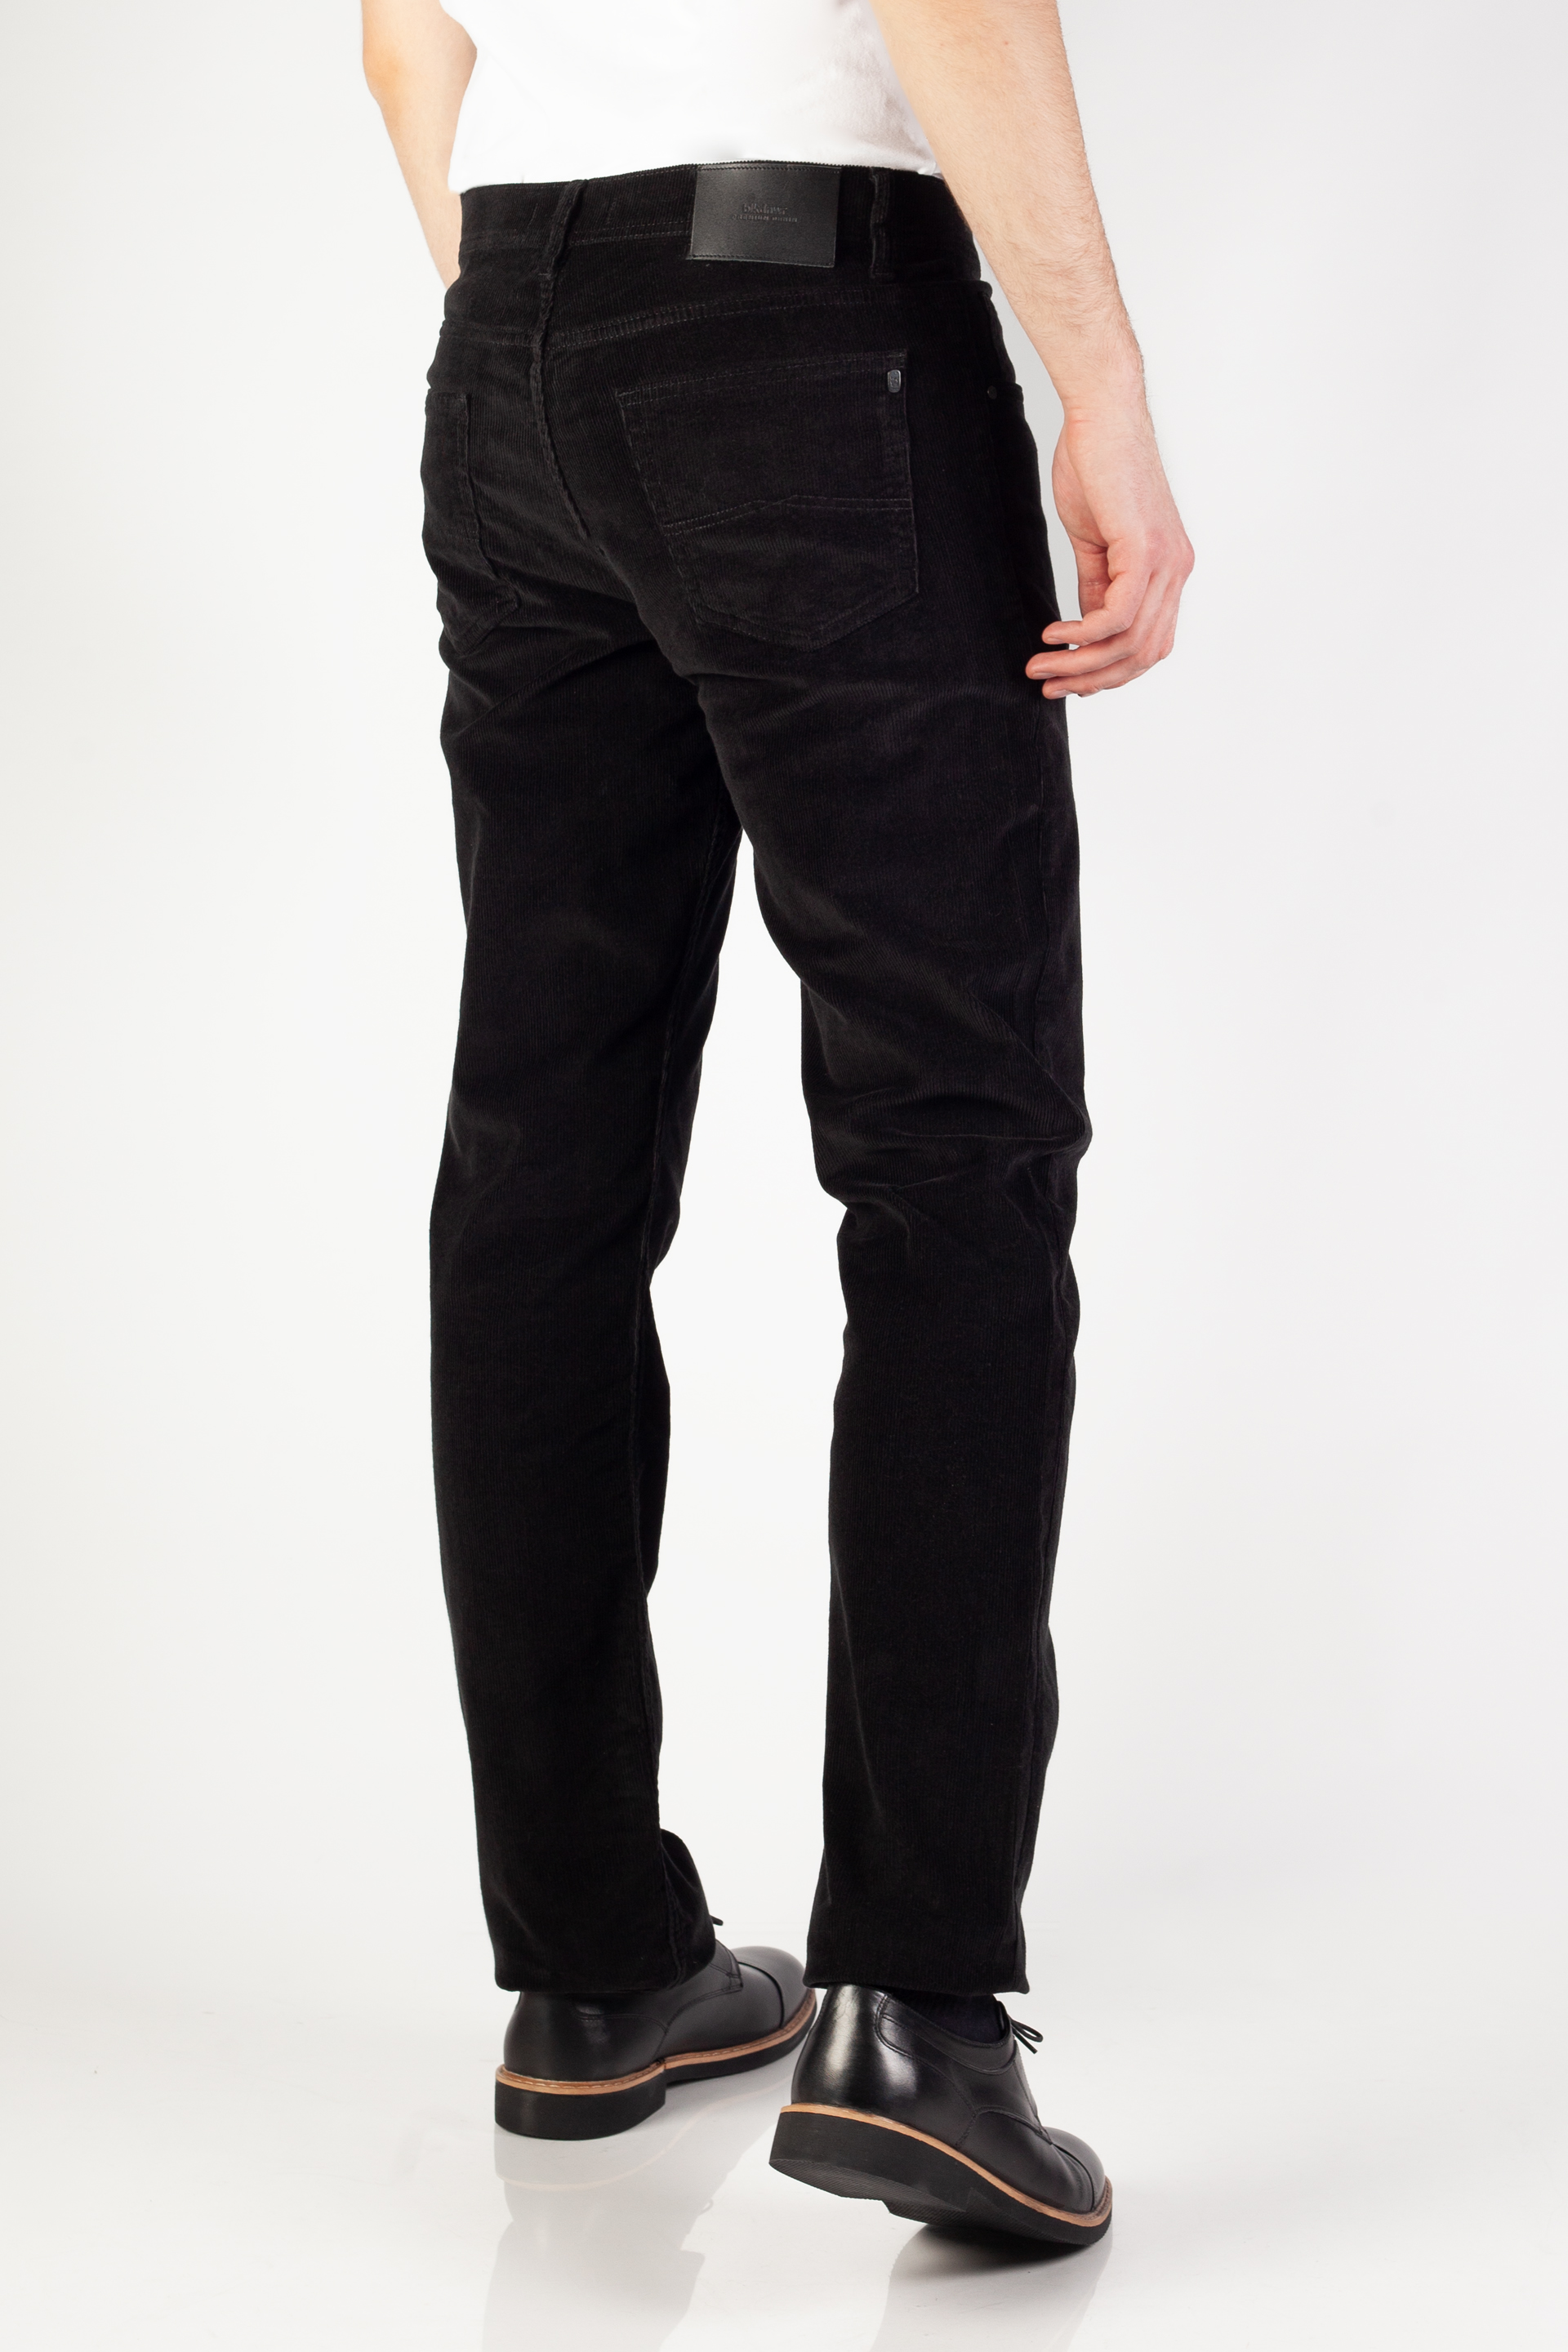 Вельветовые брюки BLK JEANS 8380-860-101-201